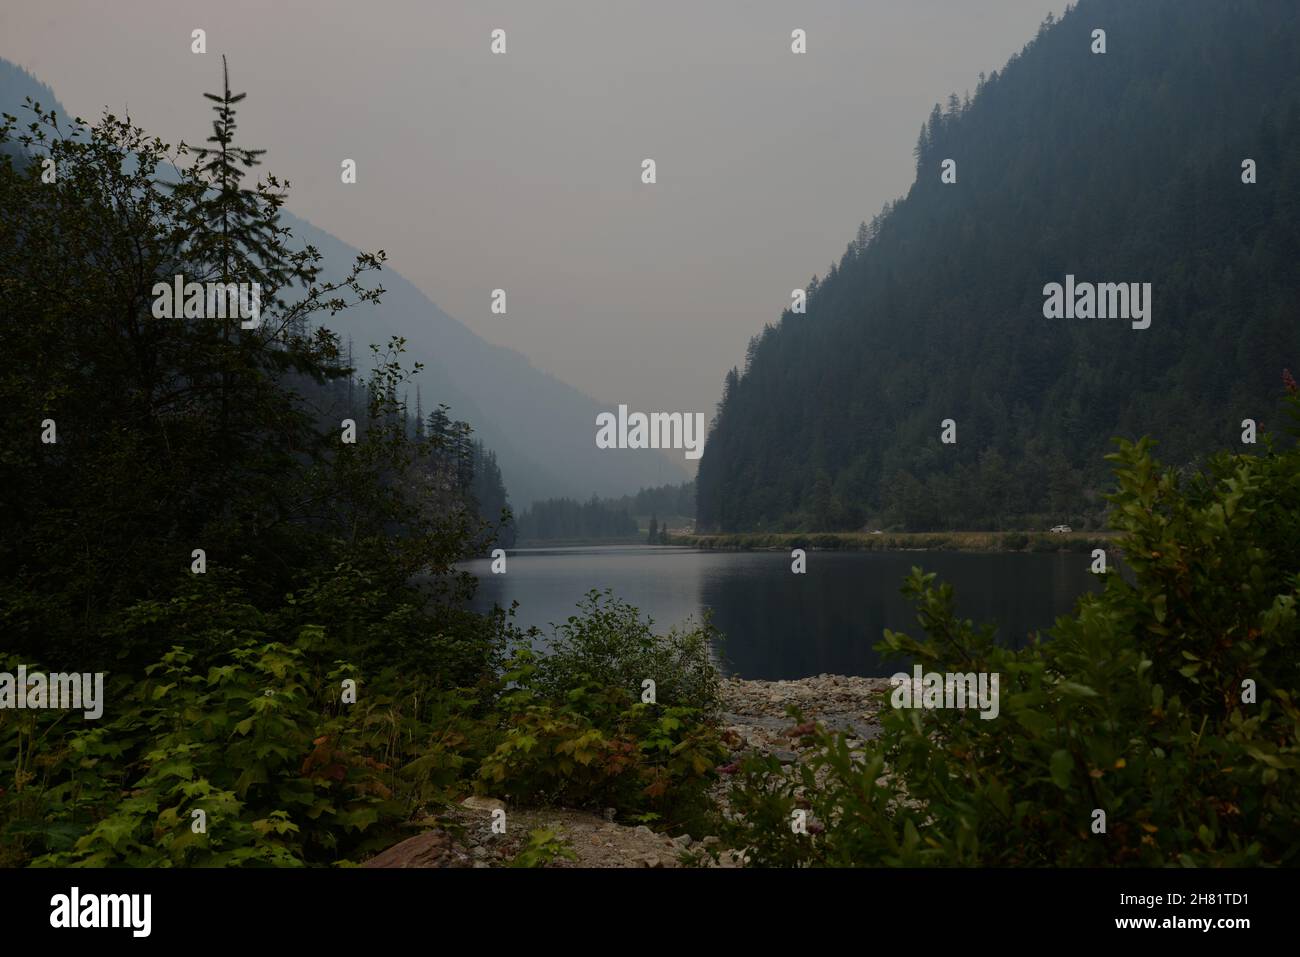 Wunderschöne Aussicht auf den Three Valley Lake, British Columbia, während die Waldbrände die Wälder verwüsten. Stockfoto